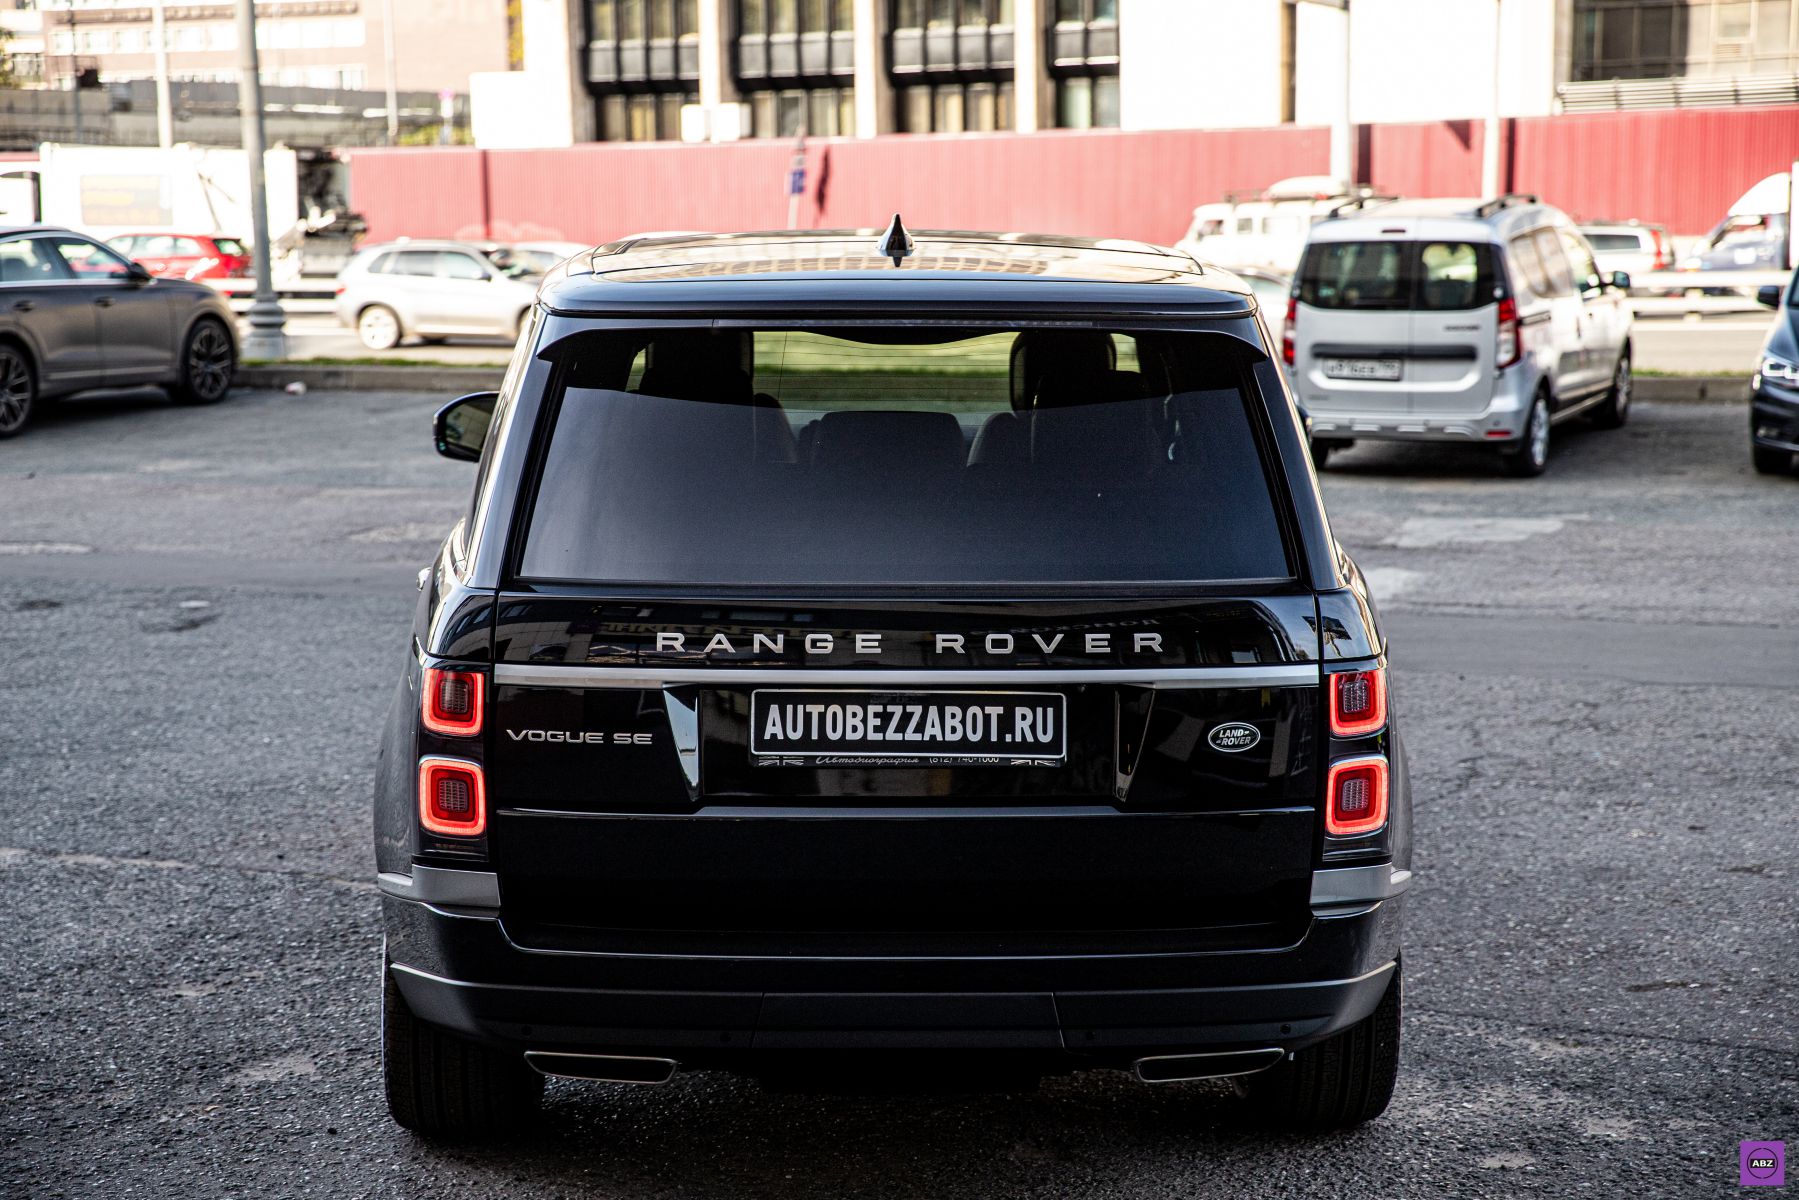 Фото Путешествие Range Rover Vogue Se из Петербурга в Москву для защиты в АвтоБезЗабот